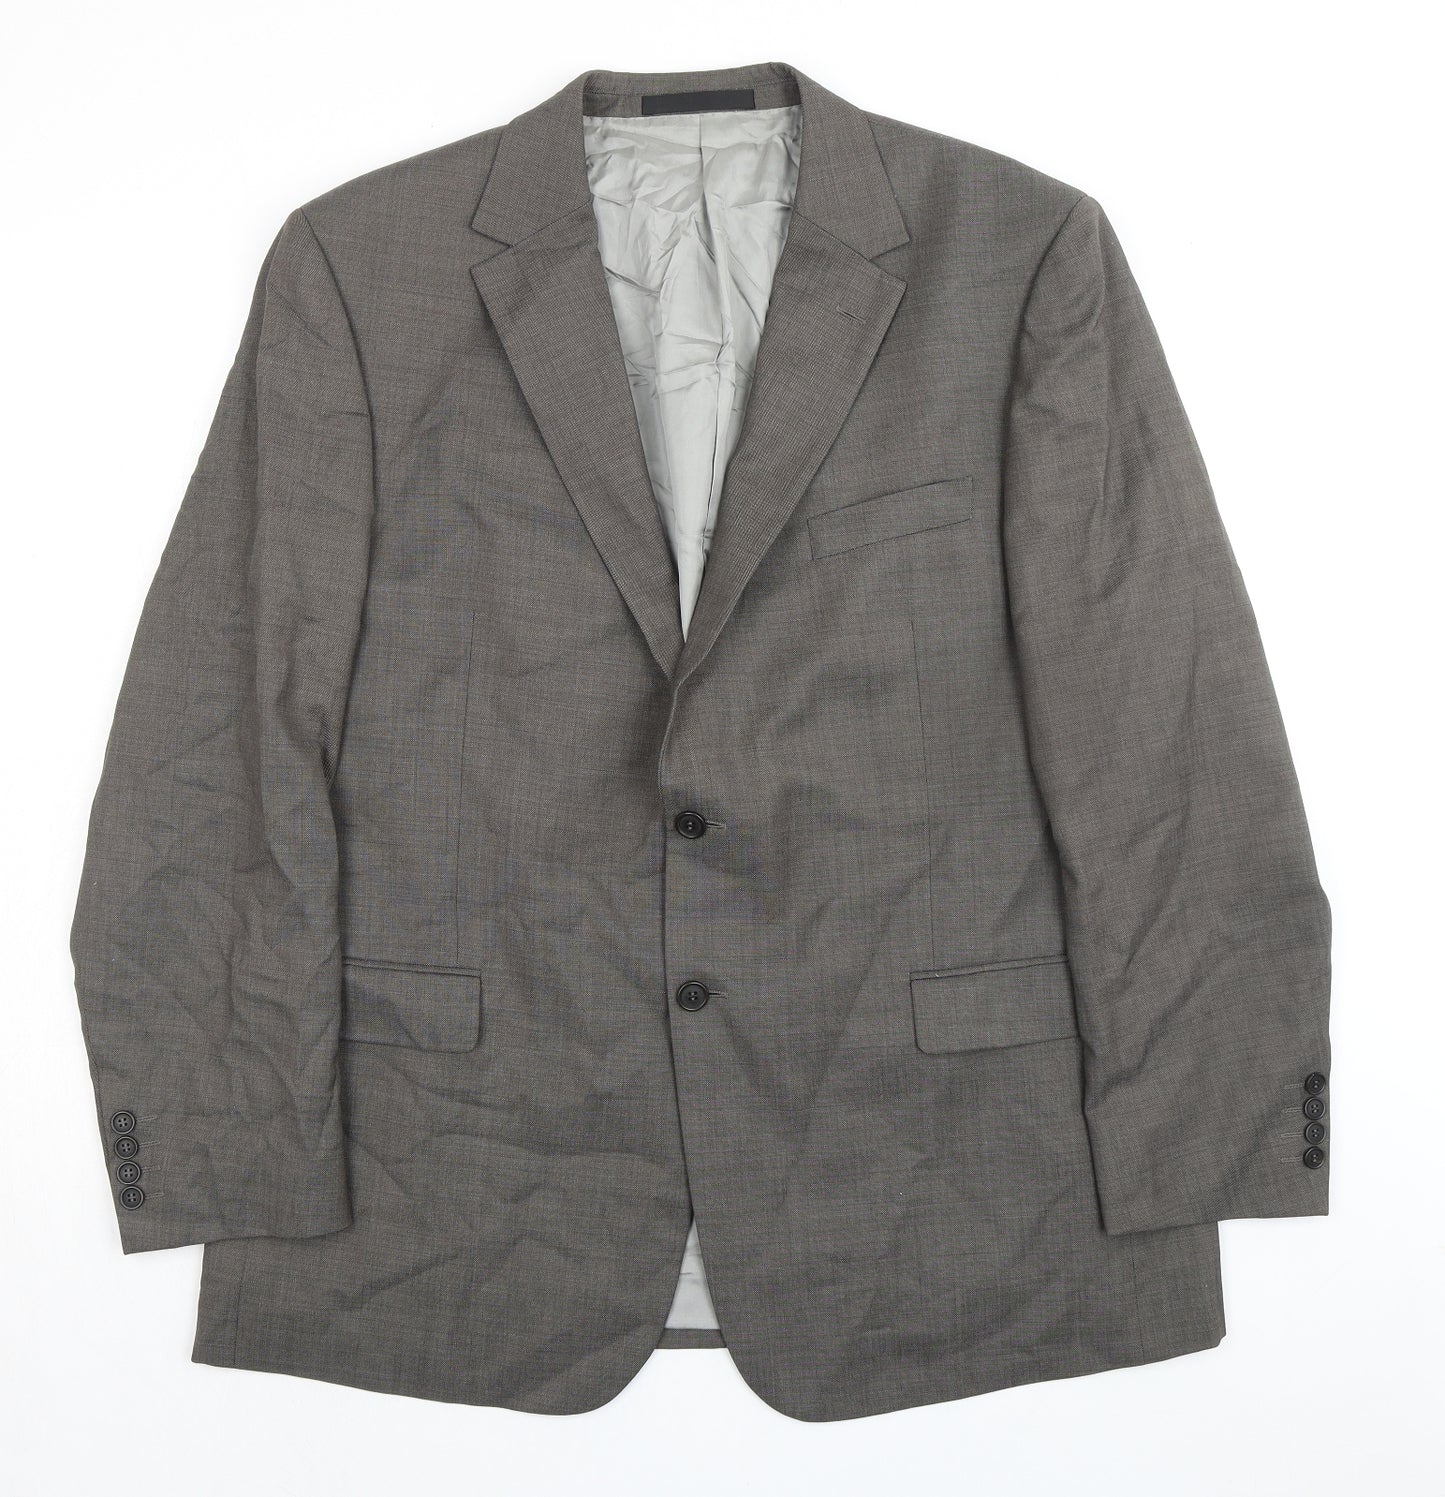 Marks and Spencer Mens Grey Wool Jacket Suit Jacket Size 44 Regular